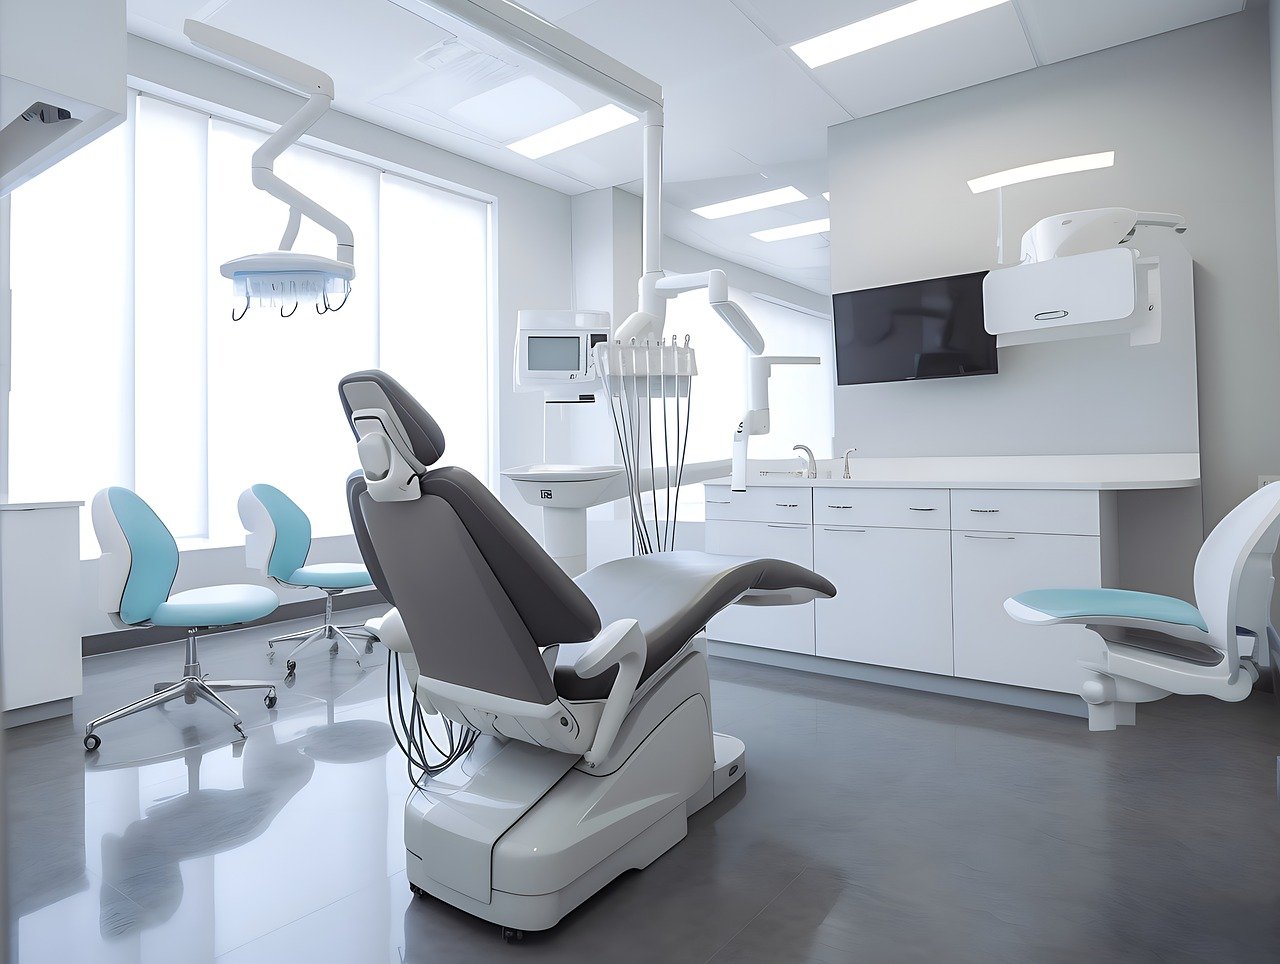 Jakie zabiegi oferuje ortodonta w Poznaniu?